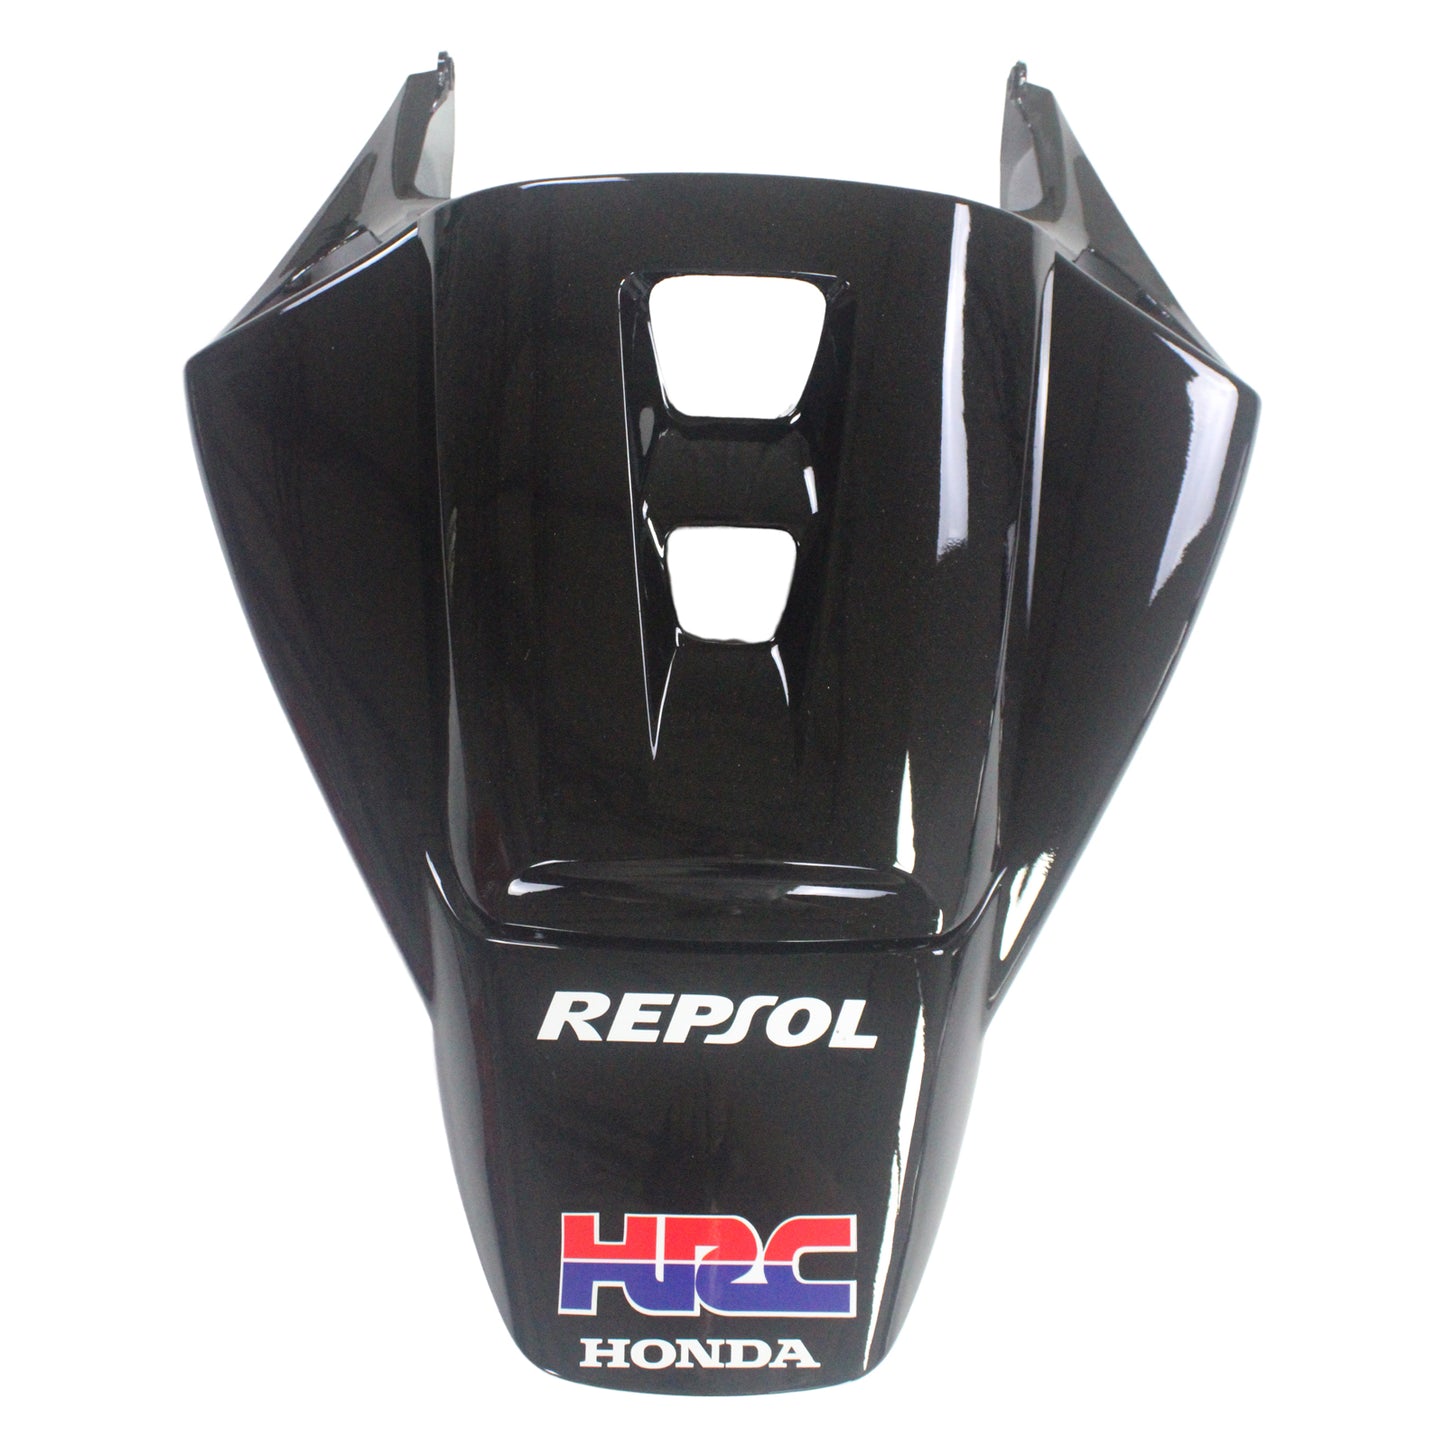 Amotopart Carénage Honda CBR1000RR 2004-2005 Carénage Repsol Racing Noir Argent Carénage Kit